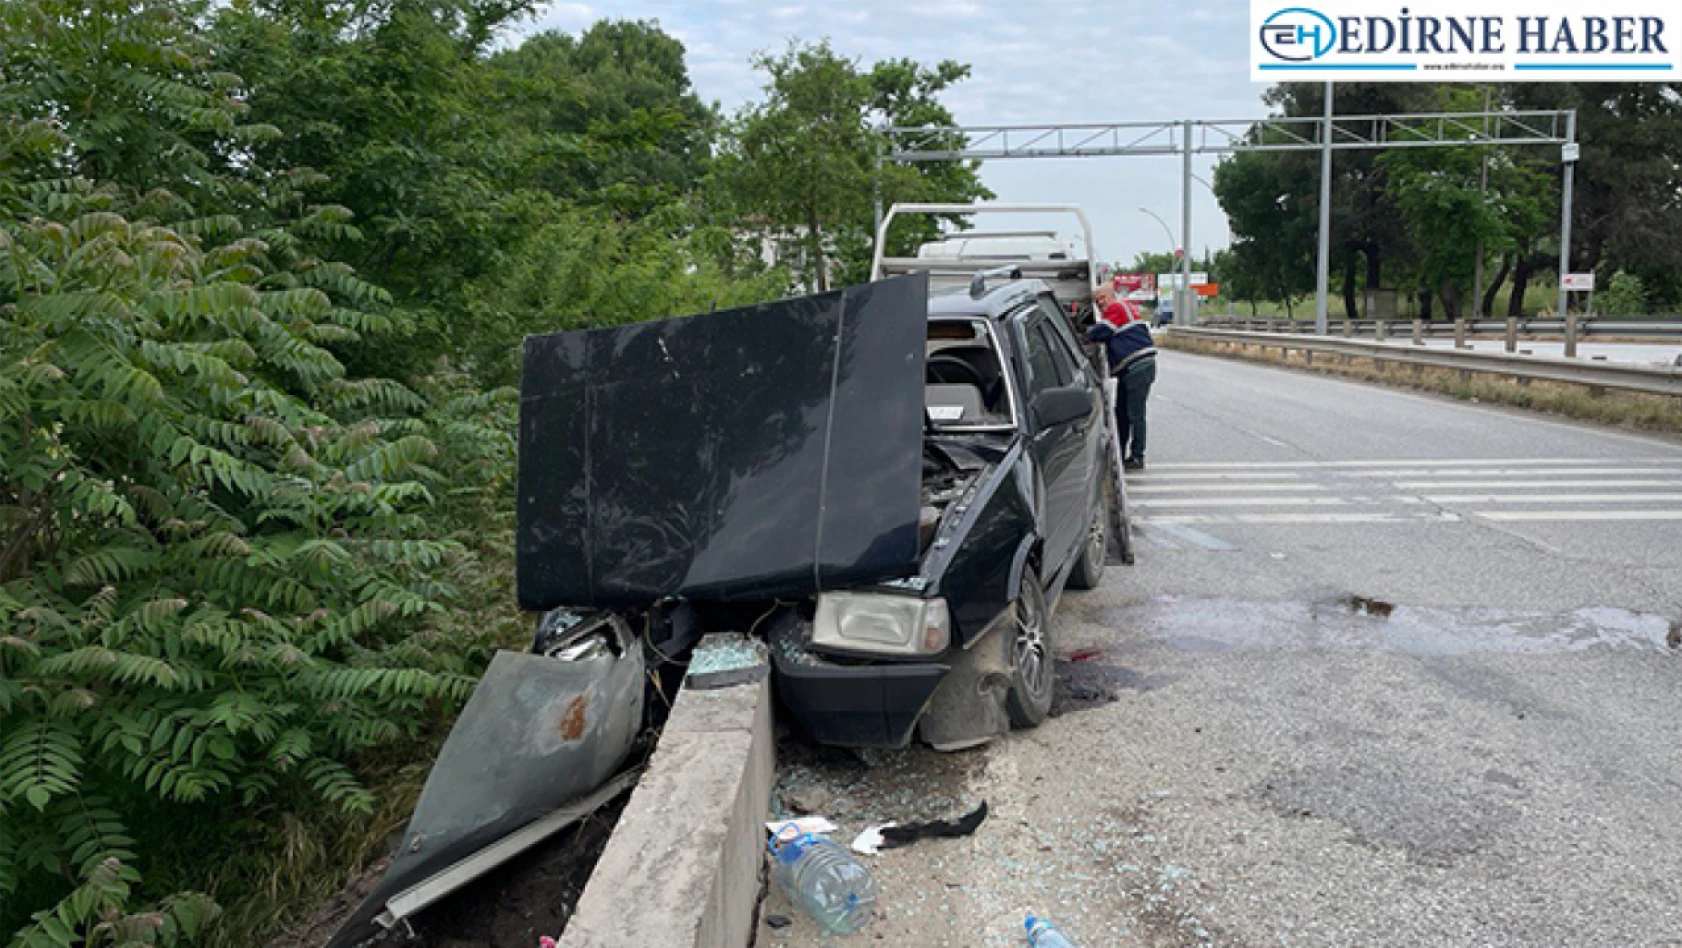 Edirne'de köprü korkuluklarına çarpan otomobilin sürücüsü yaralandı